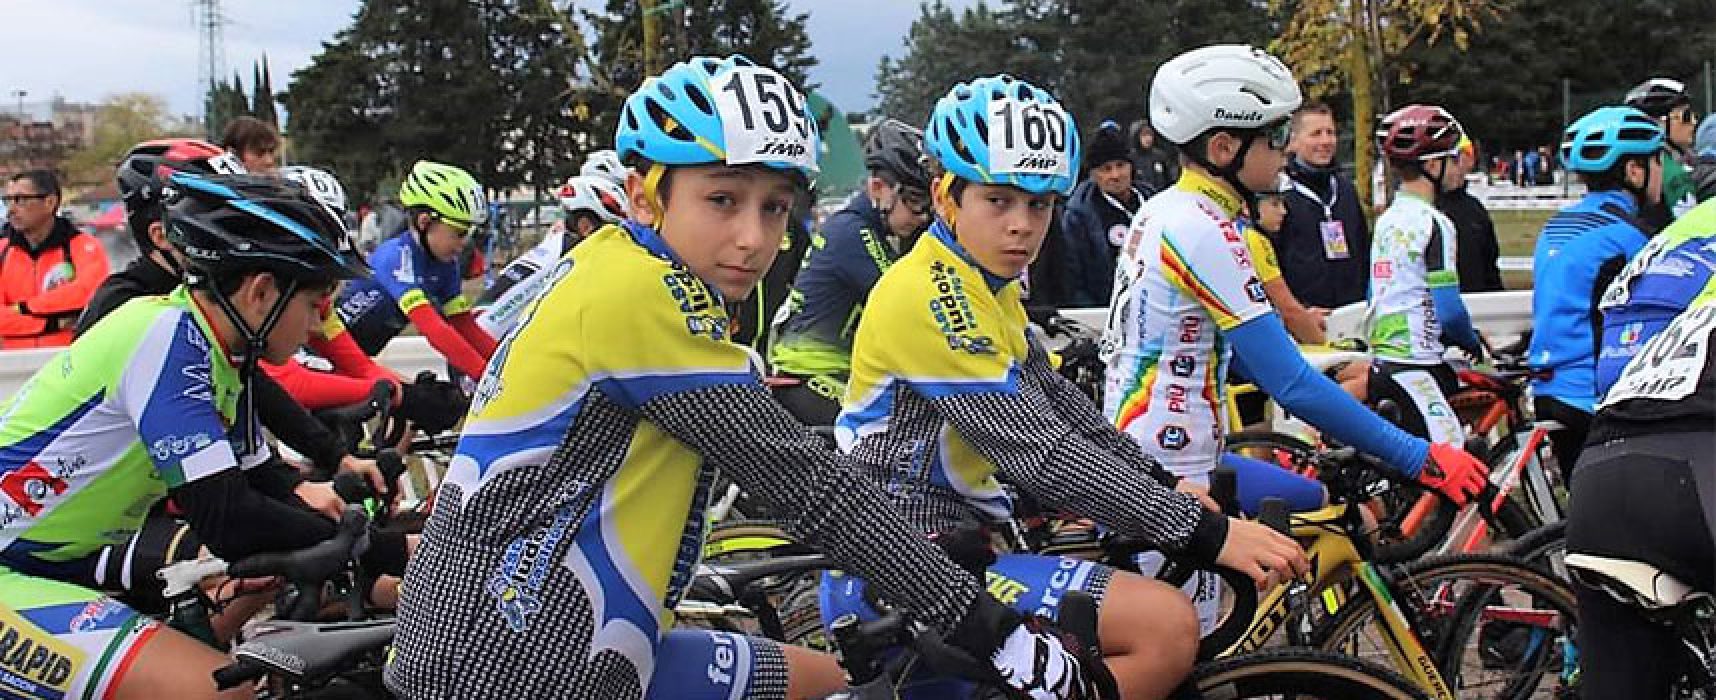 Giro d’Italia ciclocross: Ludobike a podio nella tappa di Follonica